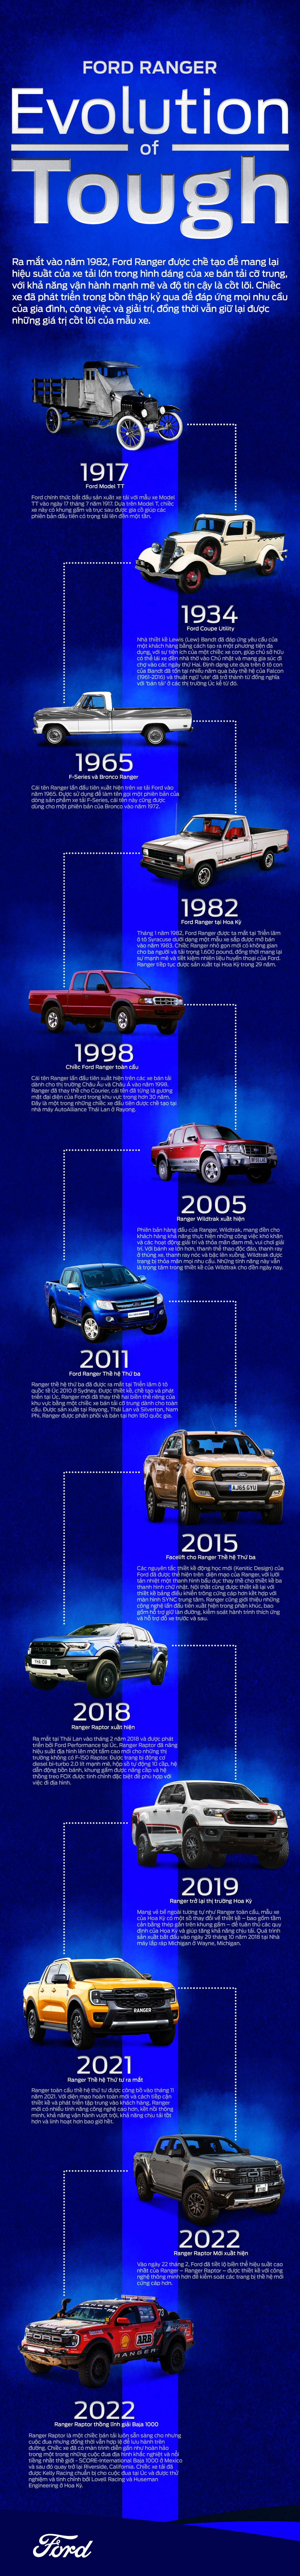 Ford Ranger qua từng thời kỳ và sự tiến hoá mạnh mẽ